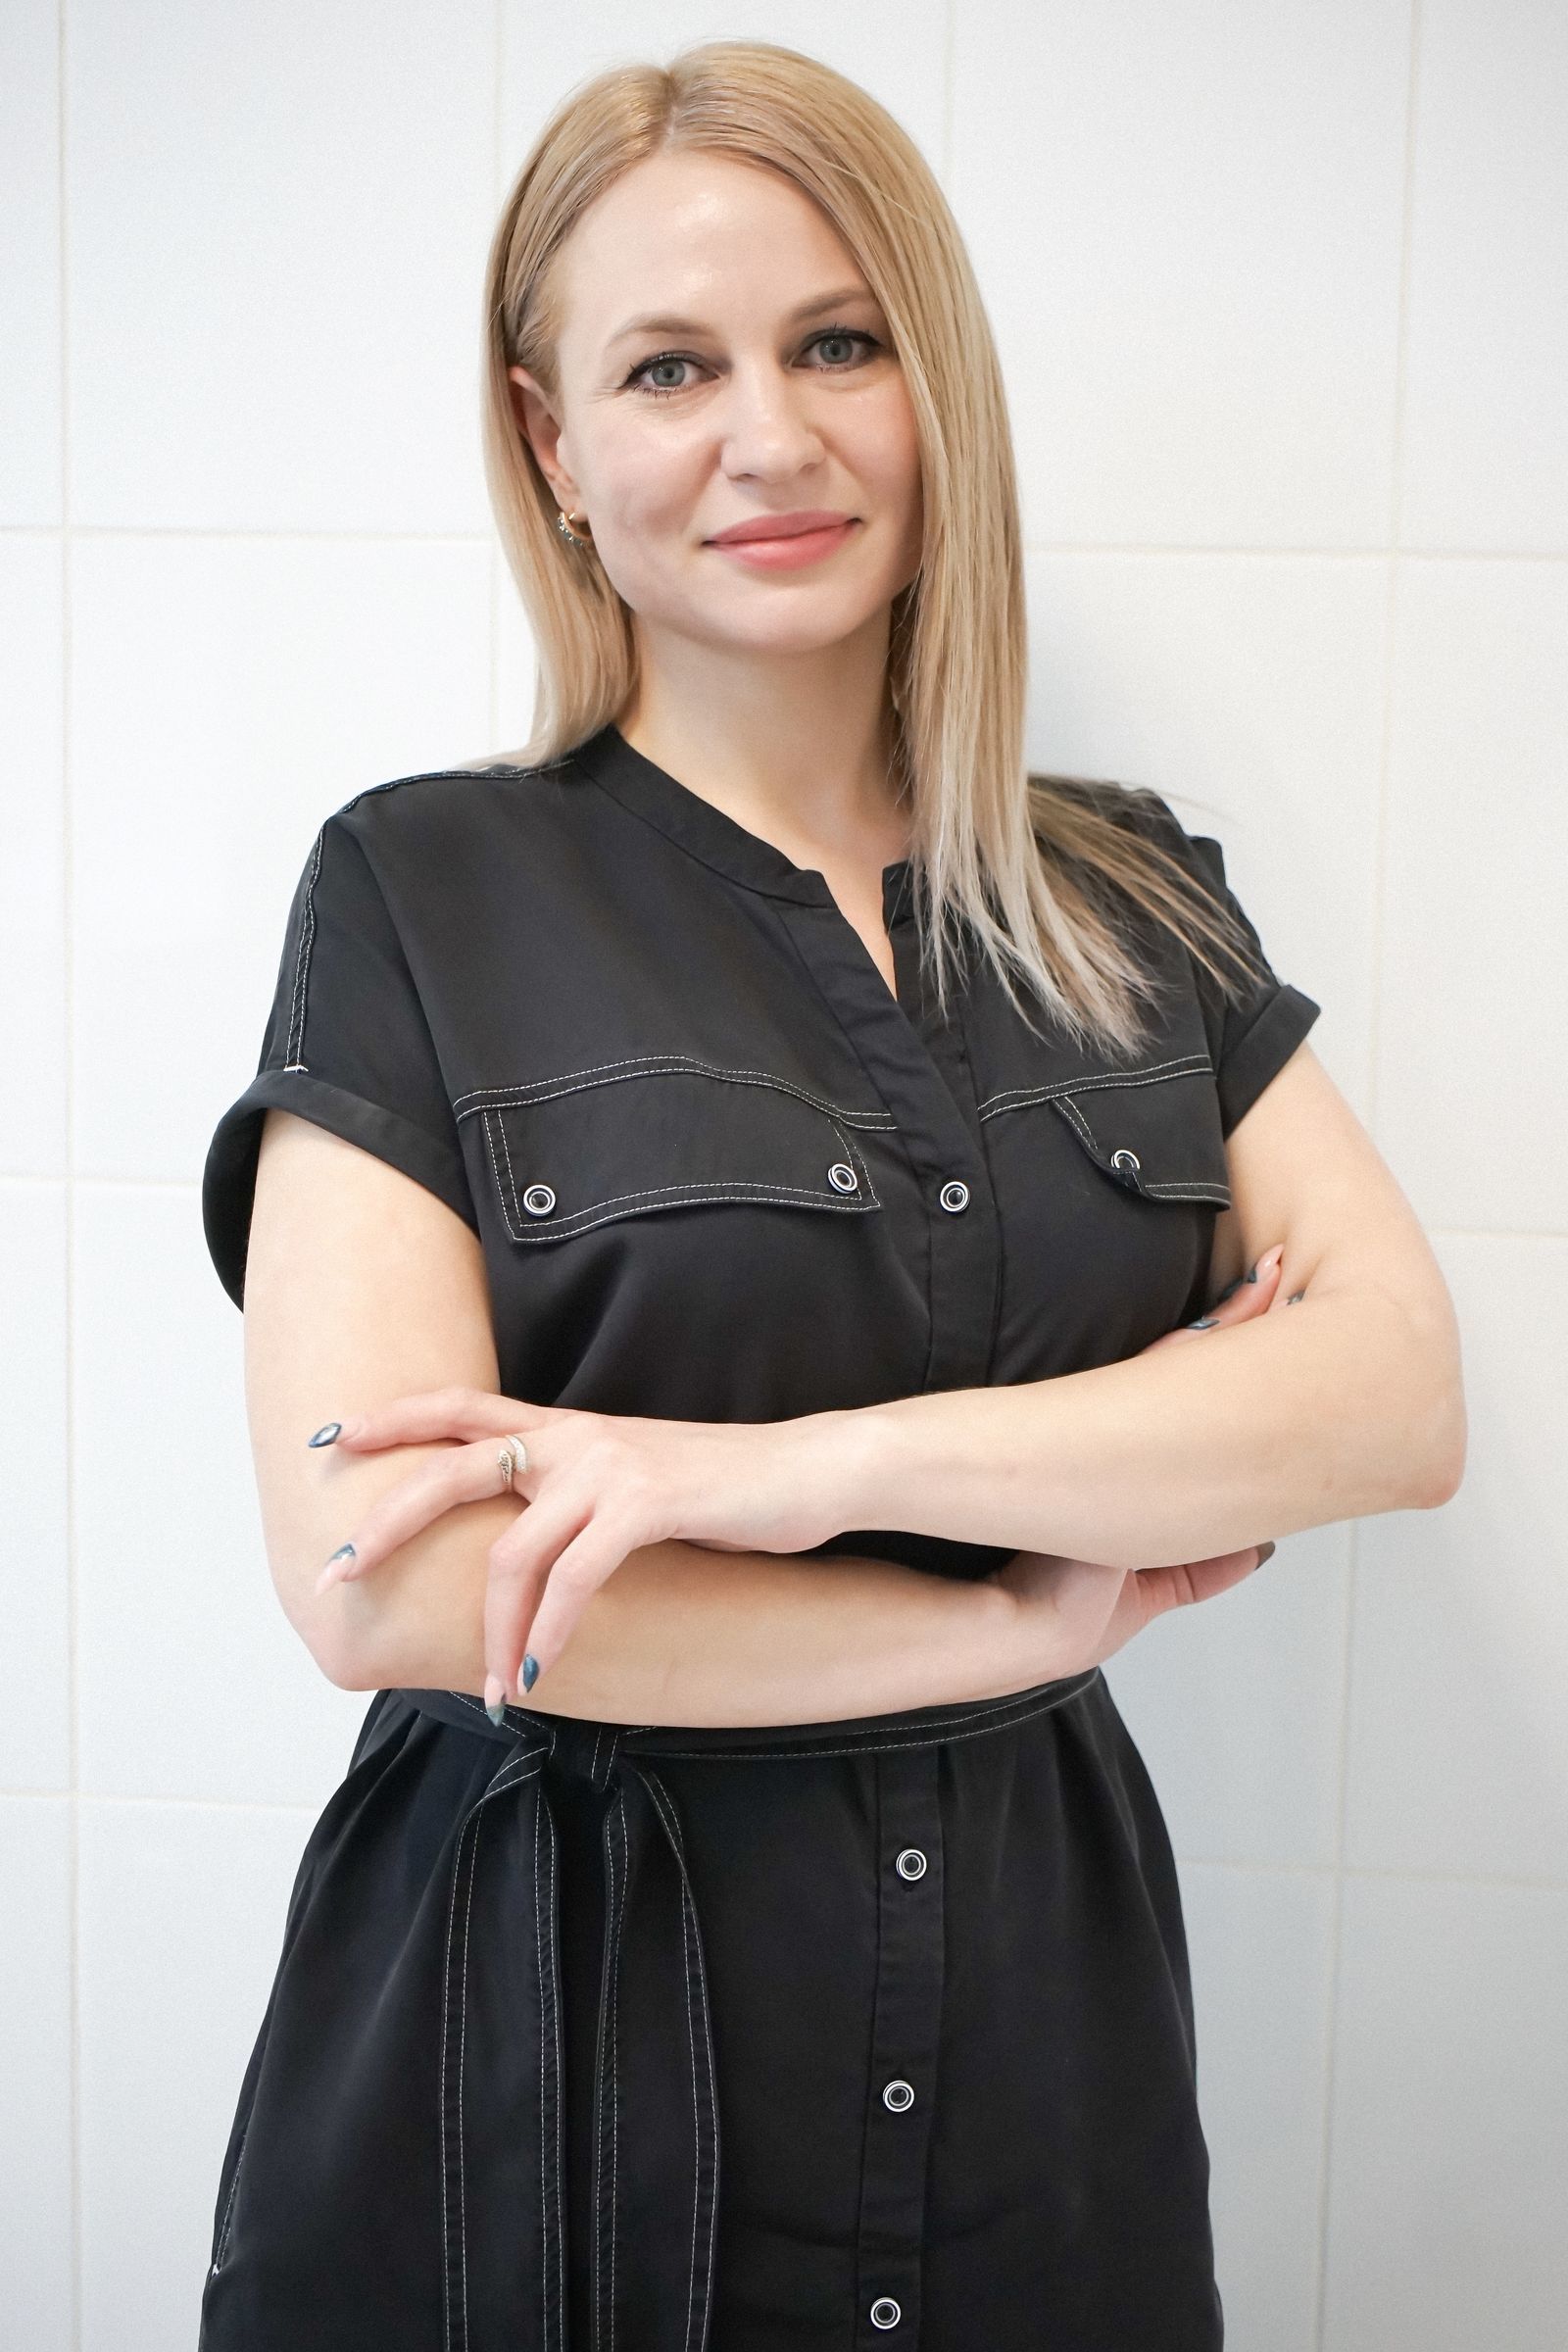 Макарова Юлия Срегеевна, администратор